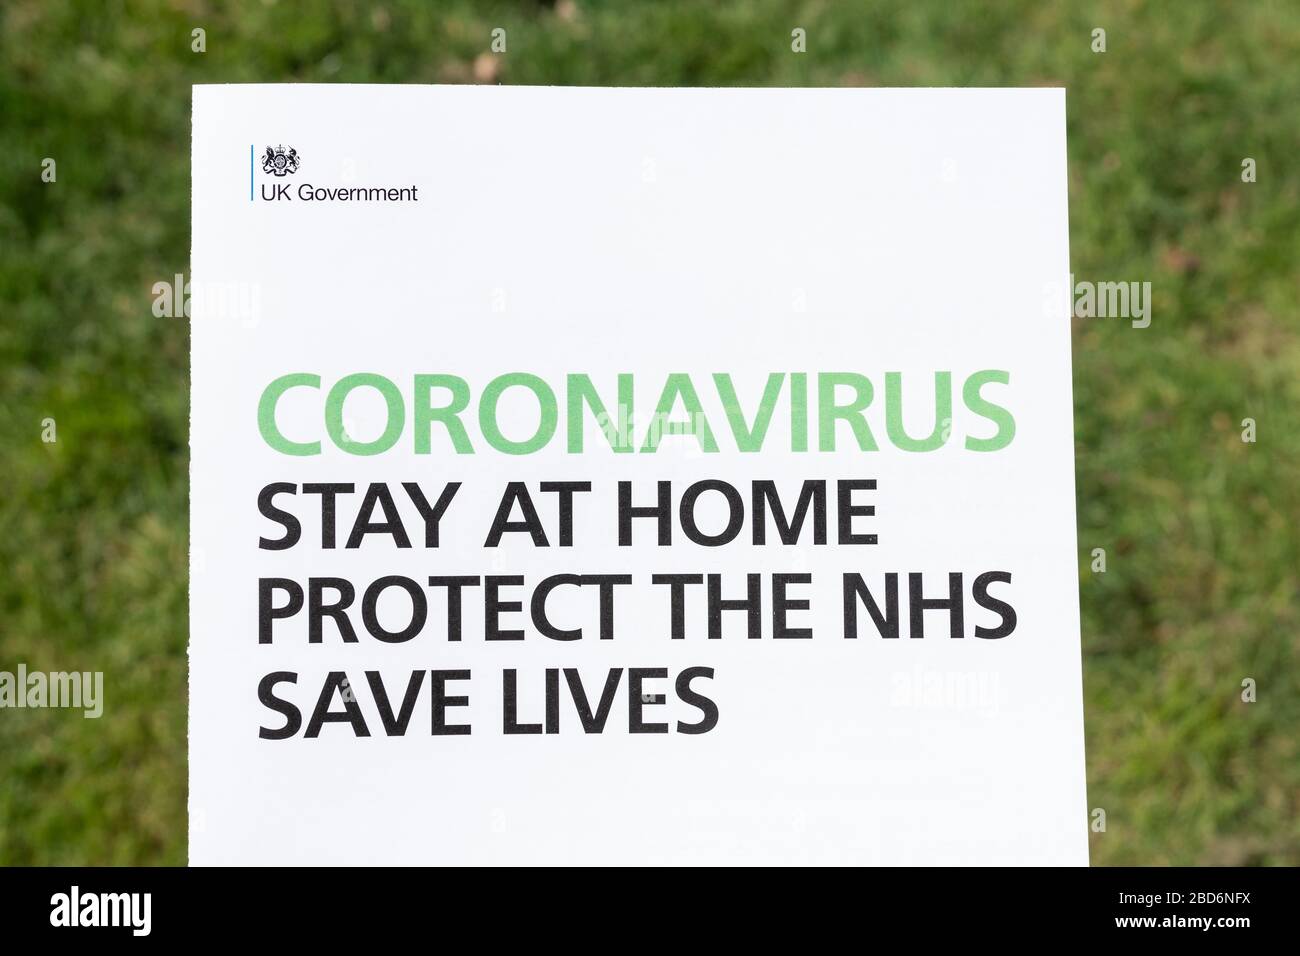 Coronavirus Stay at Home Protect the NHS Save Lives - Informationsblatt der britischen Regierung über die Coronavirus Covid-19-Pandemie, April 2020 Stockfoto